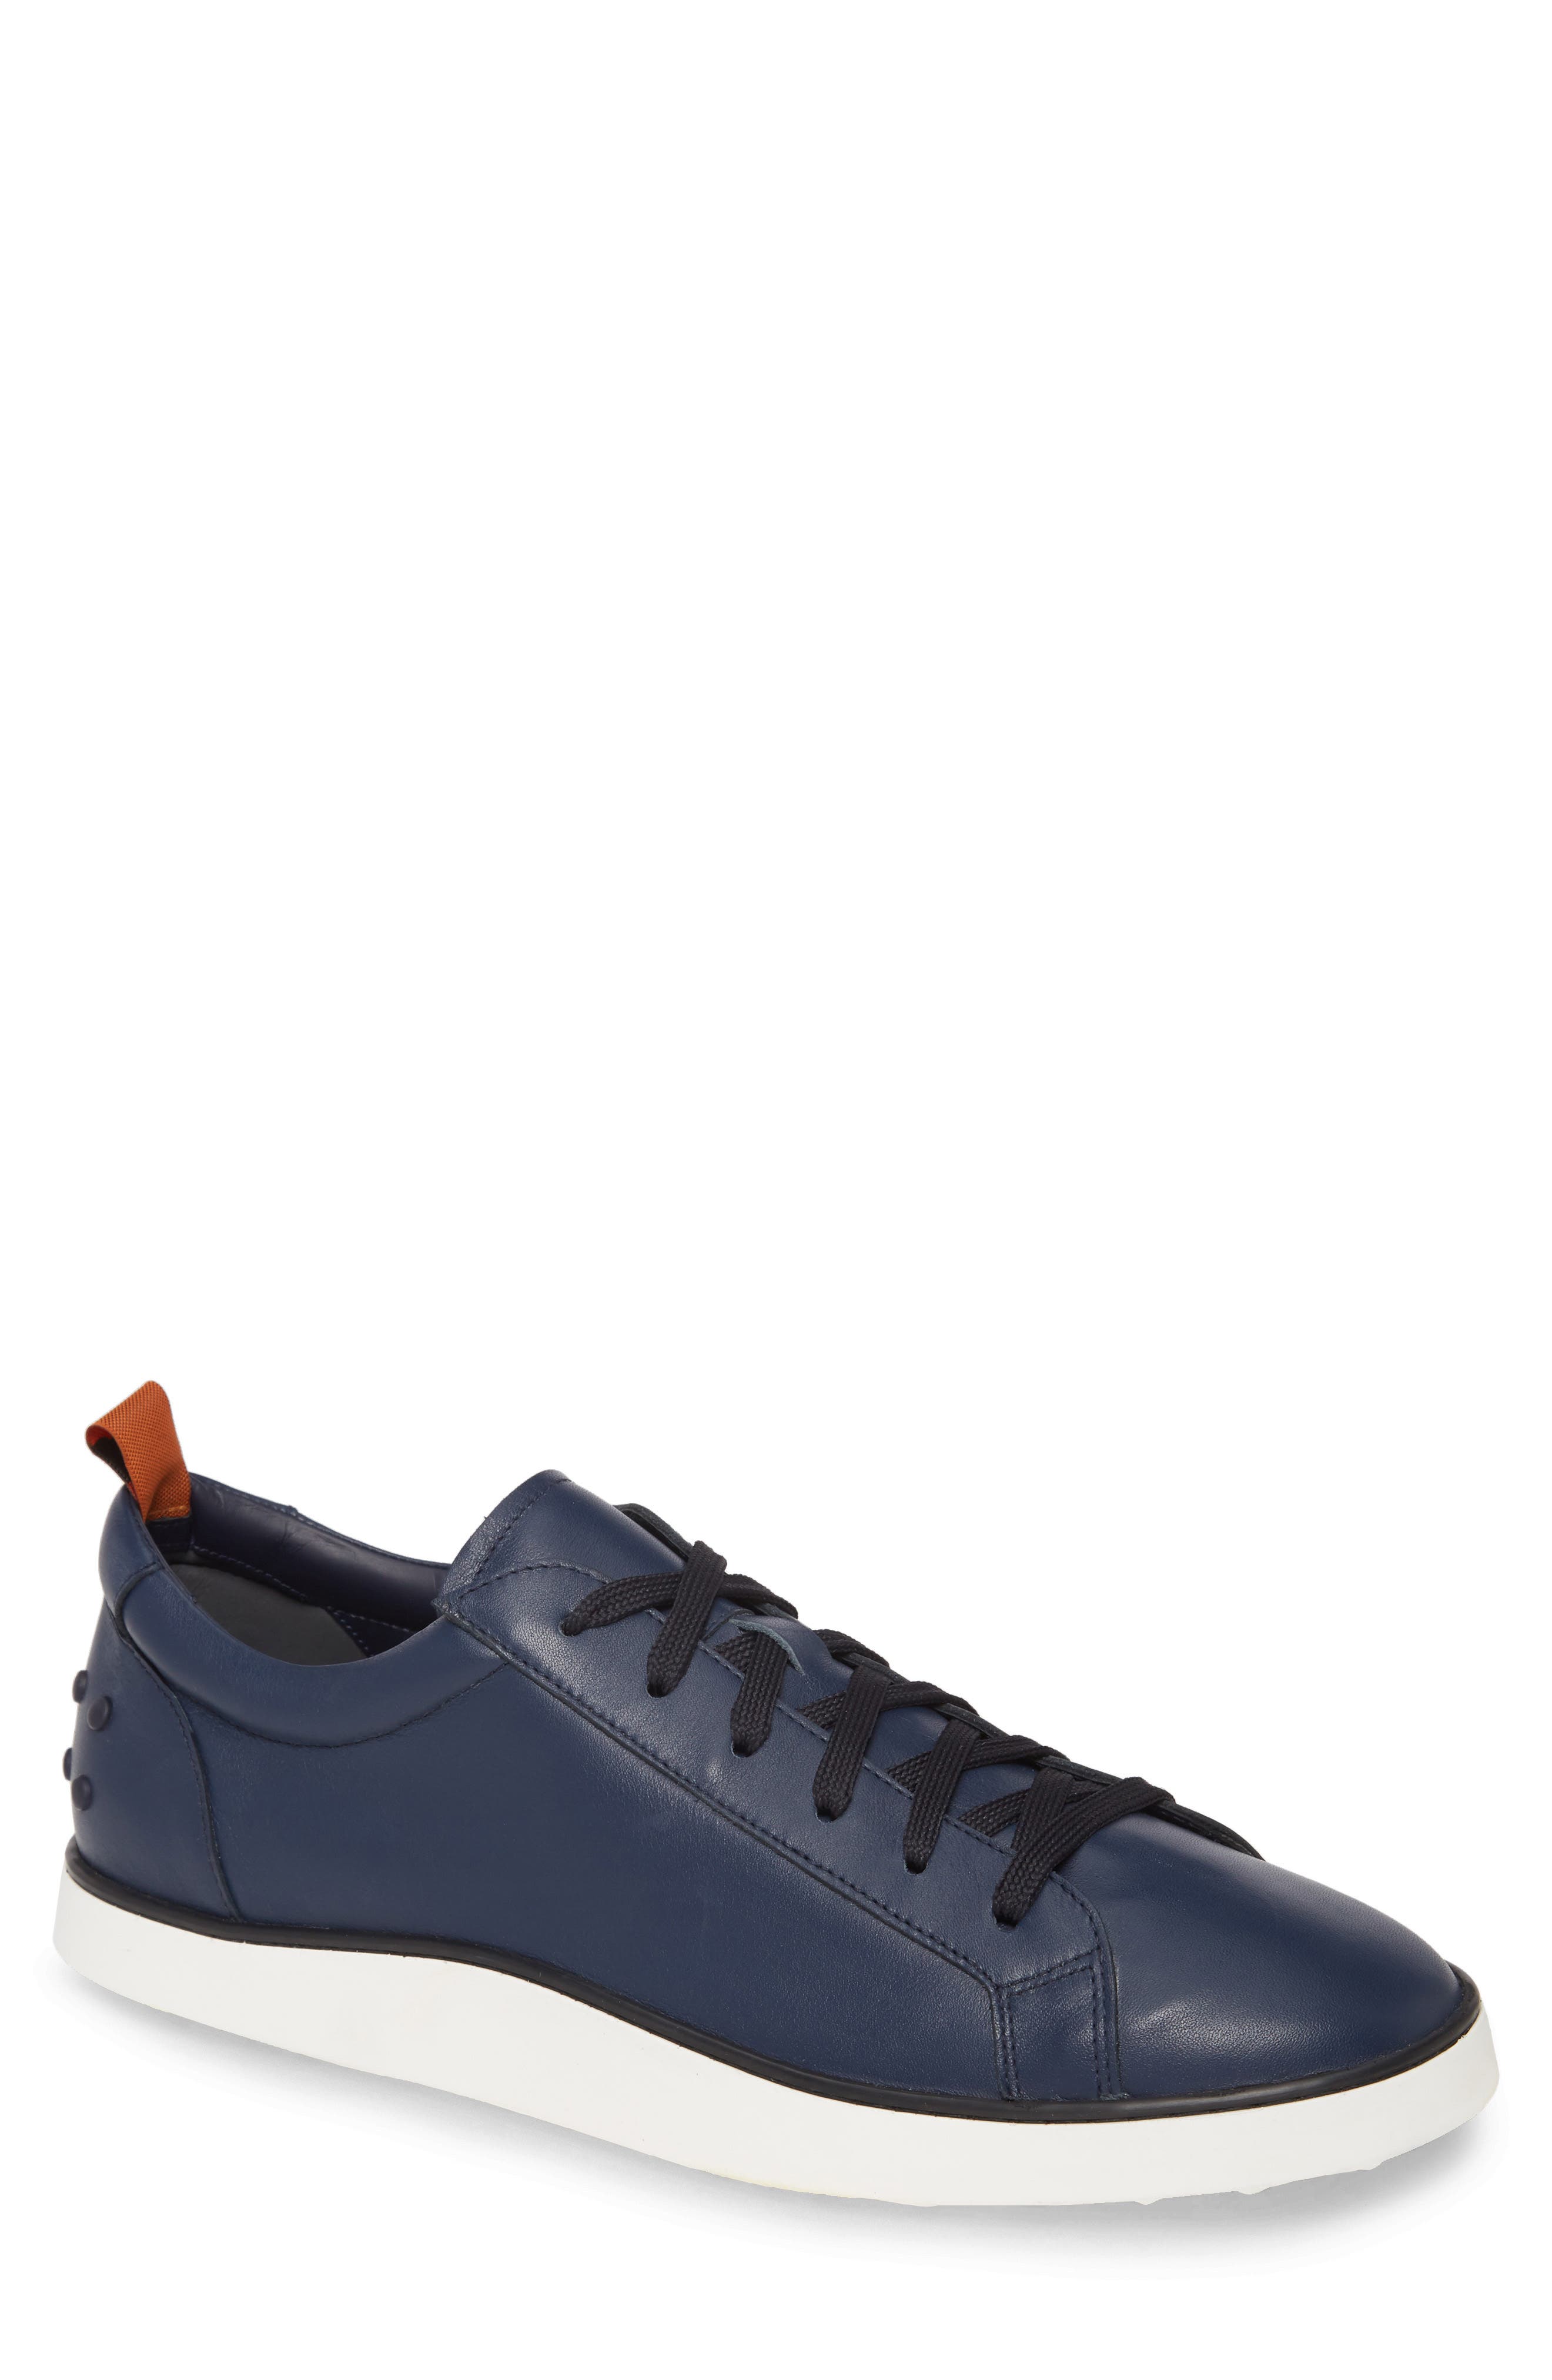 mens navy blue designer shoes